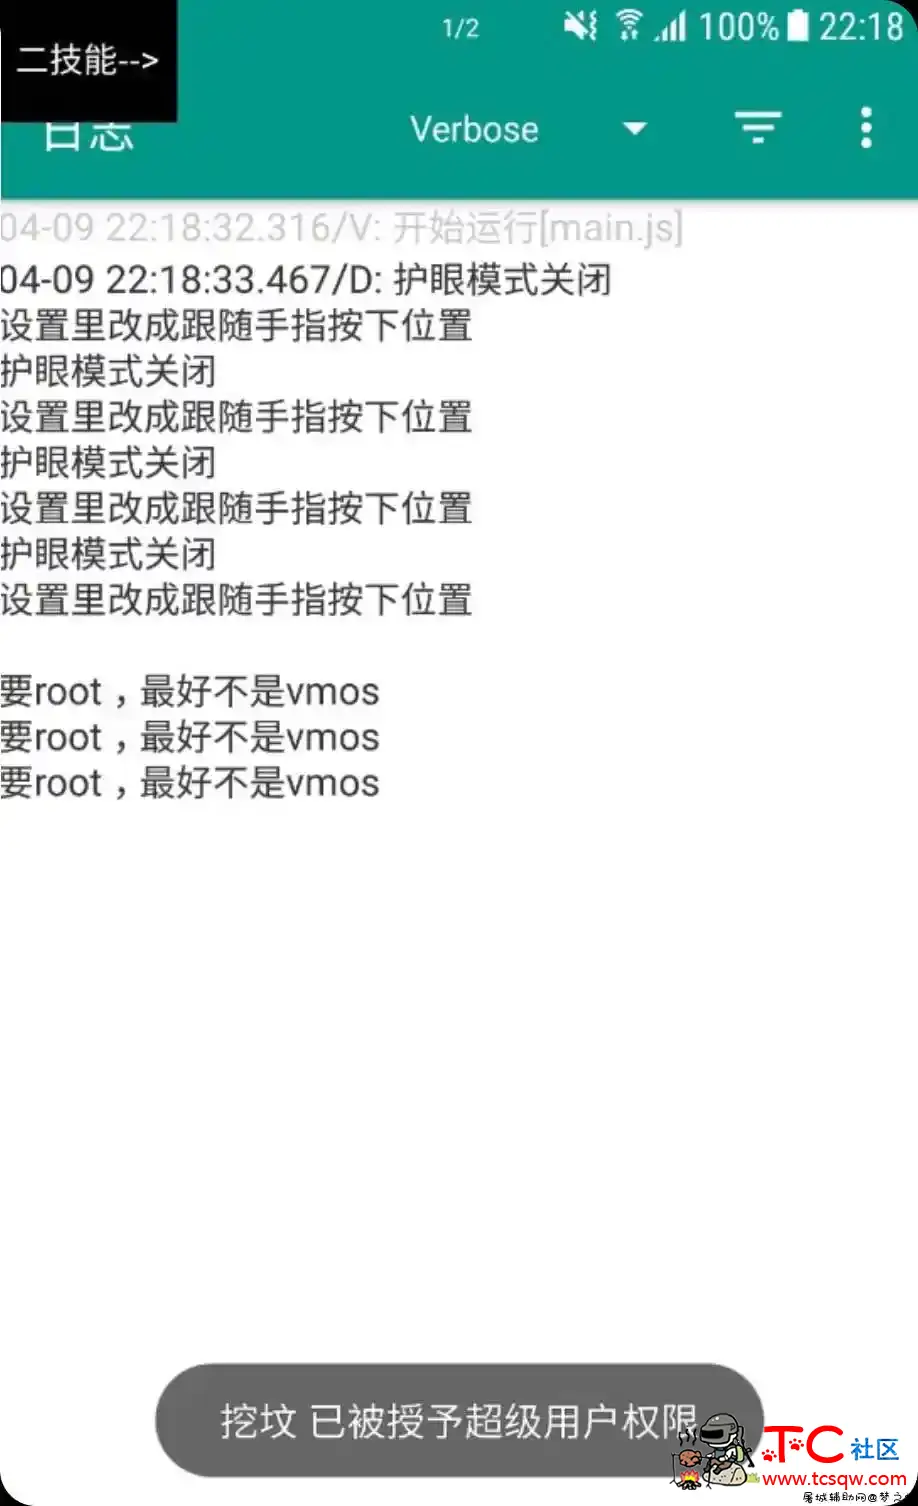 王者荣耀root专用百里守约触摸自瞄插件1.0.1 屠城辅助网www.tcfz1.com2832